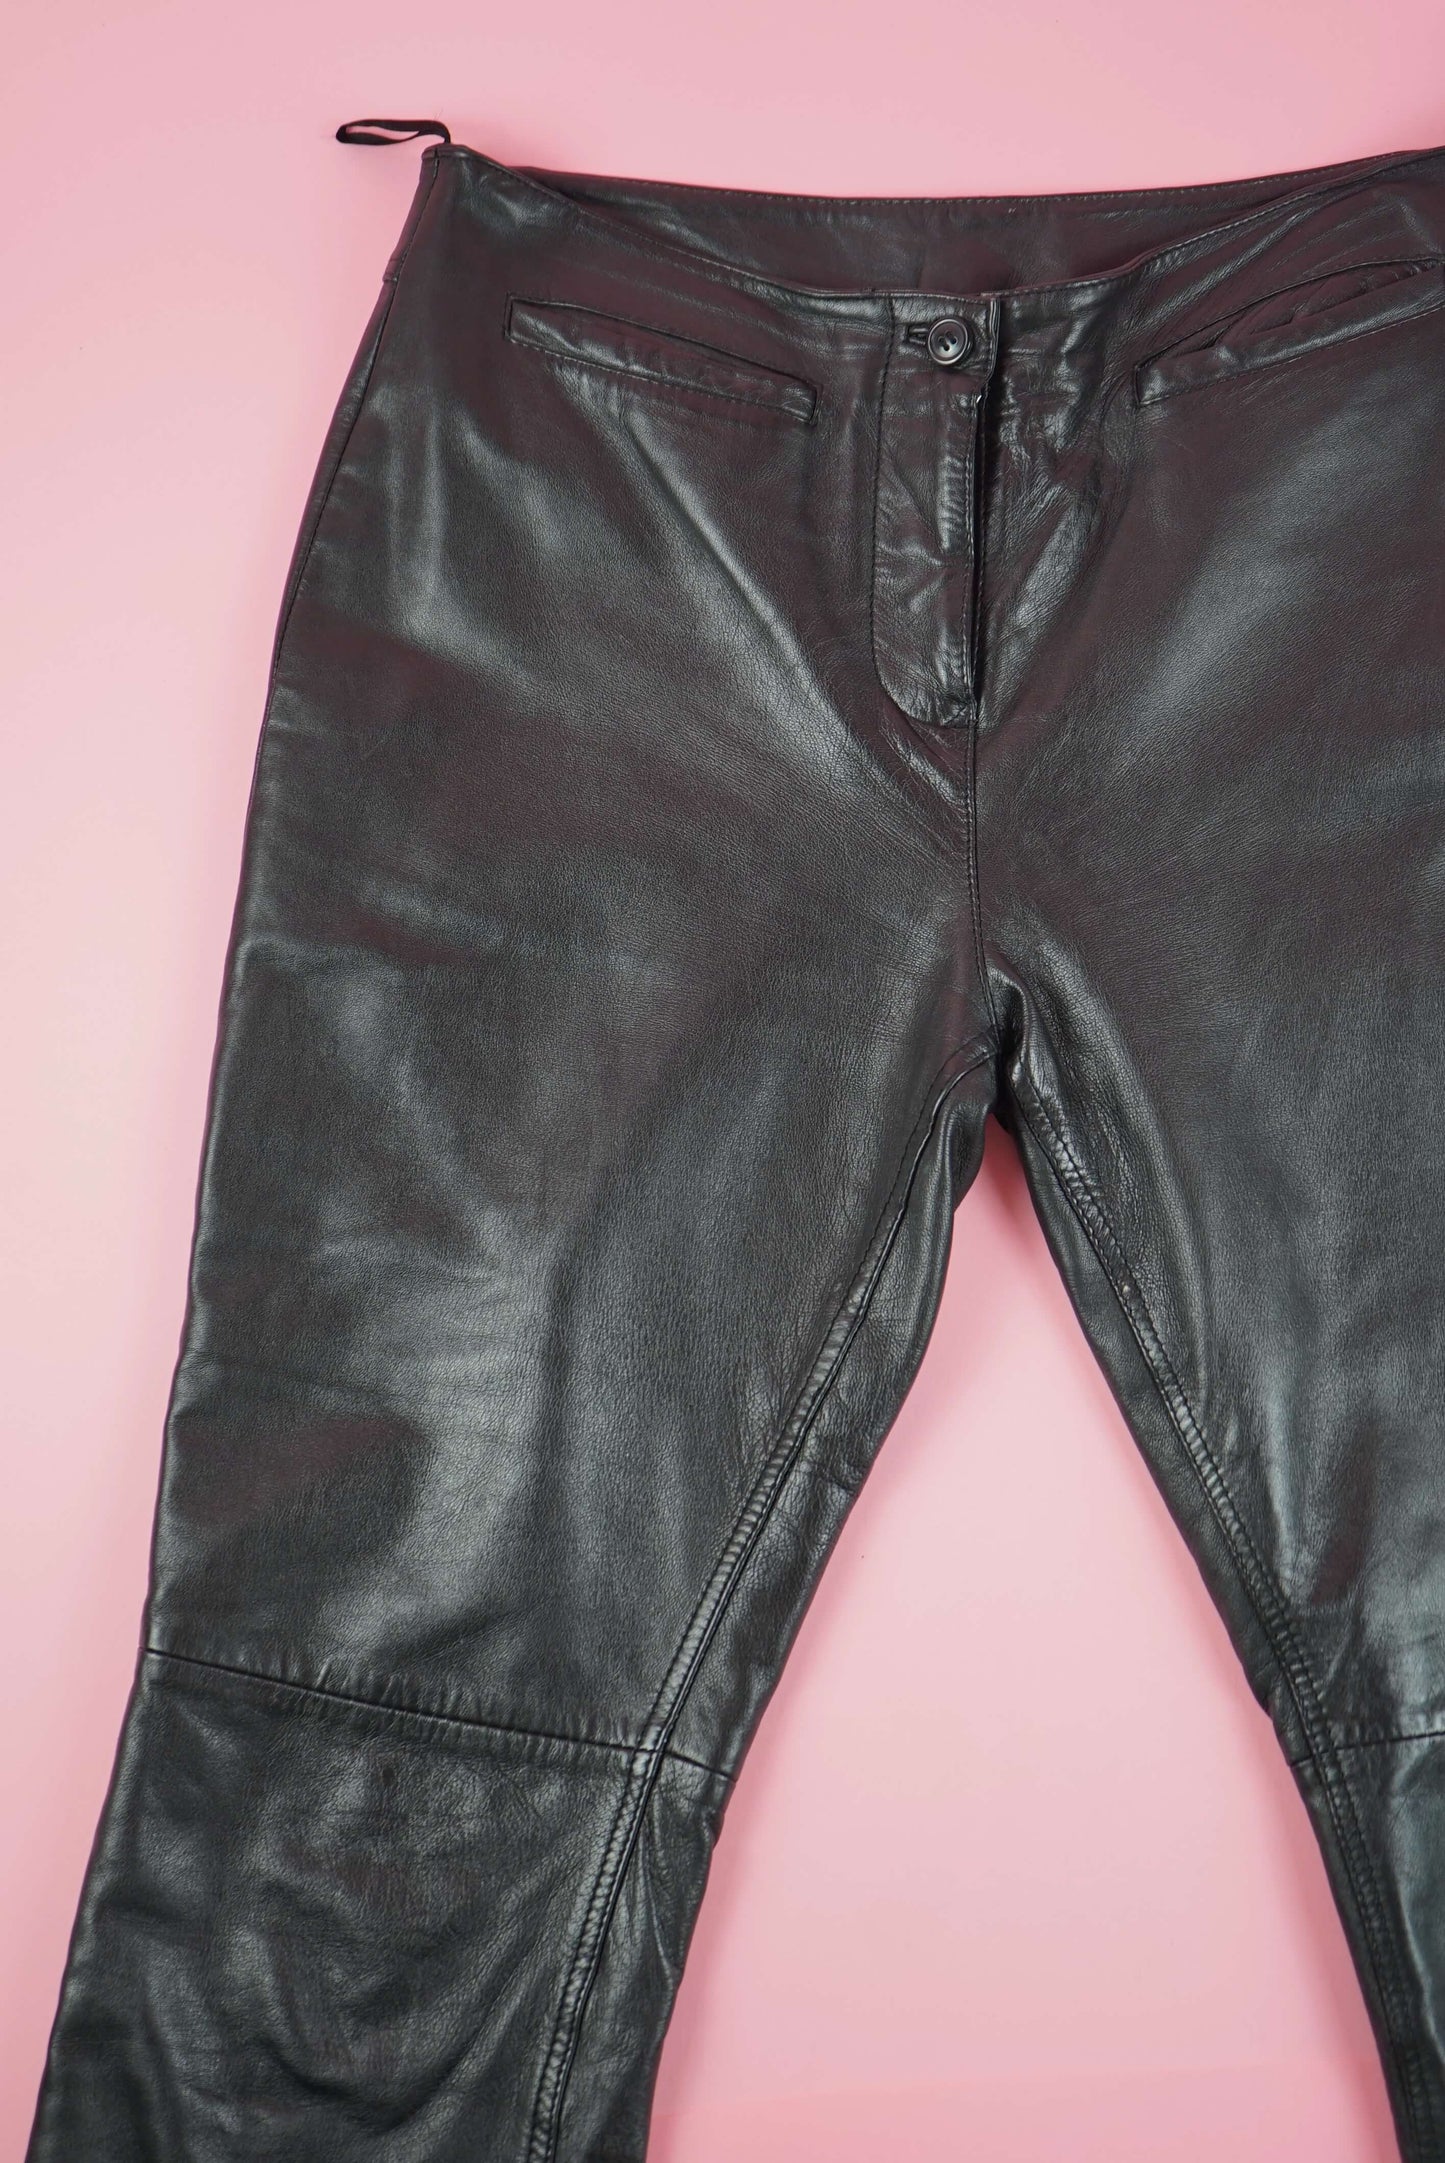 Black Soft Leather Trousers Vintage Bootcut L-XL W35-36 UK Size 16-18 | EU size 46-48